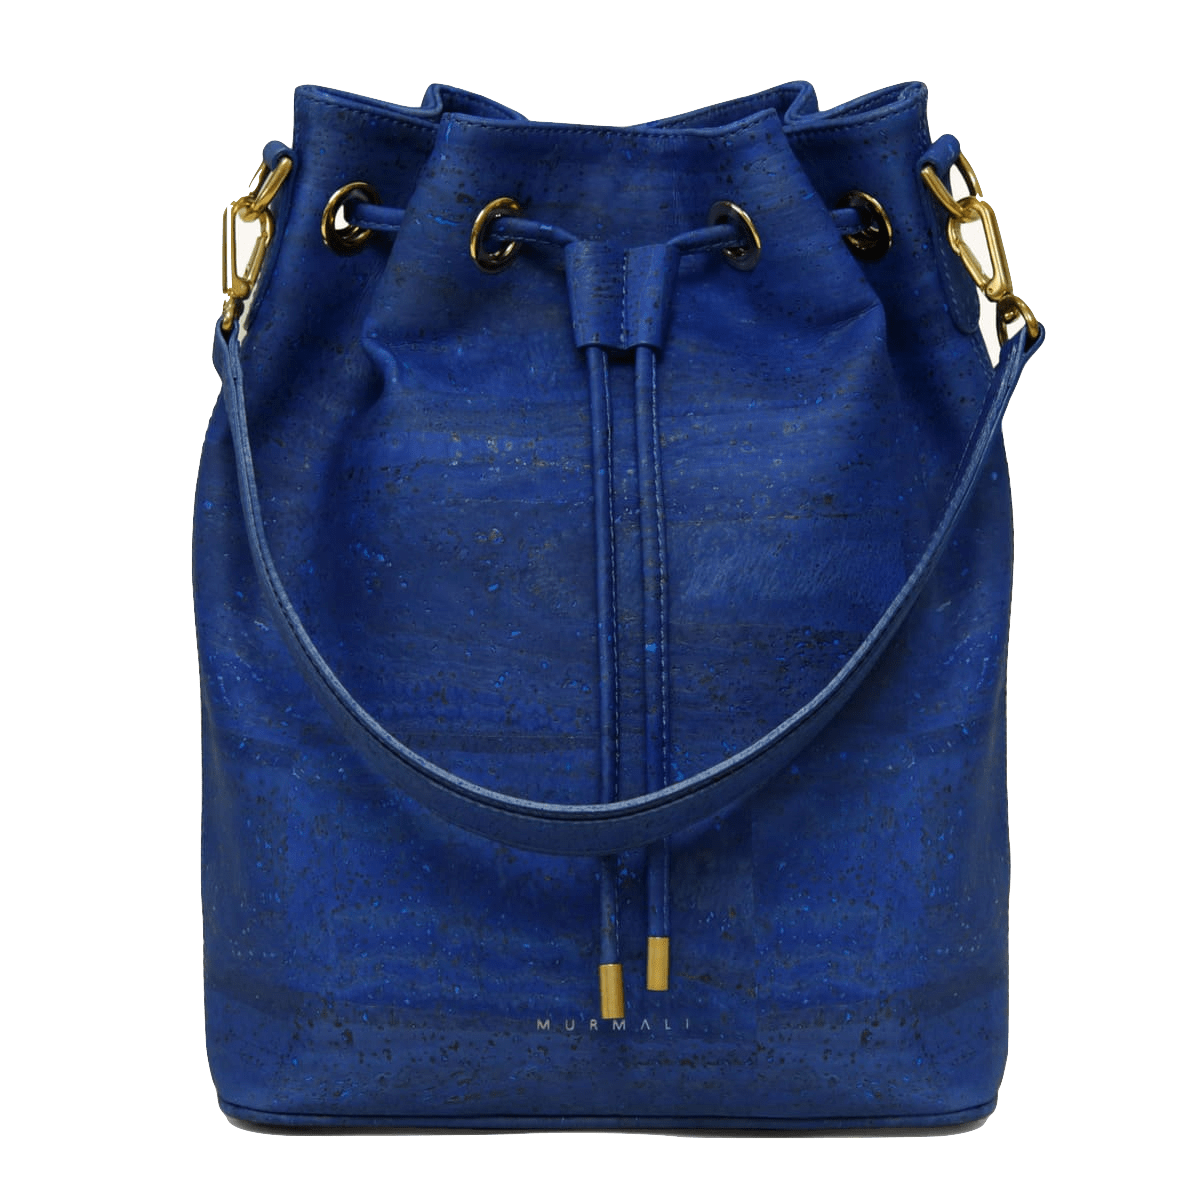 Louis Vuitton Backpack Handbag Zipper, Women bag transparent